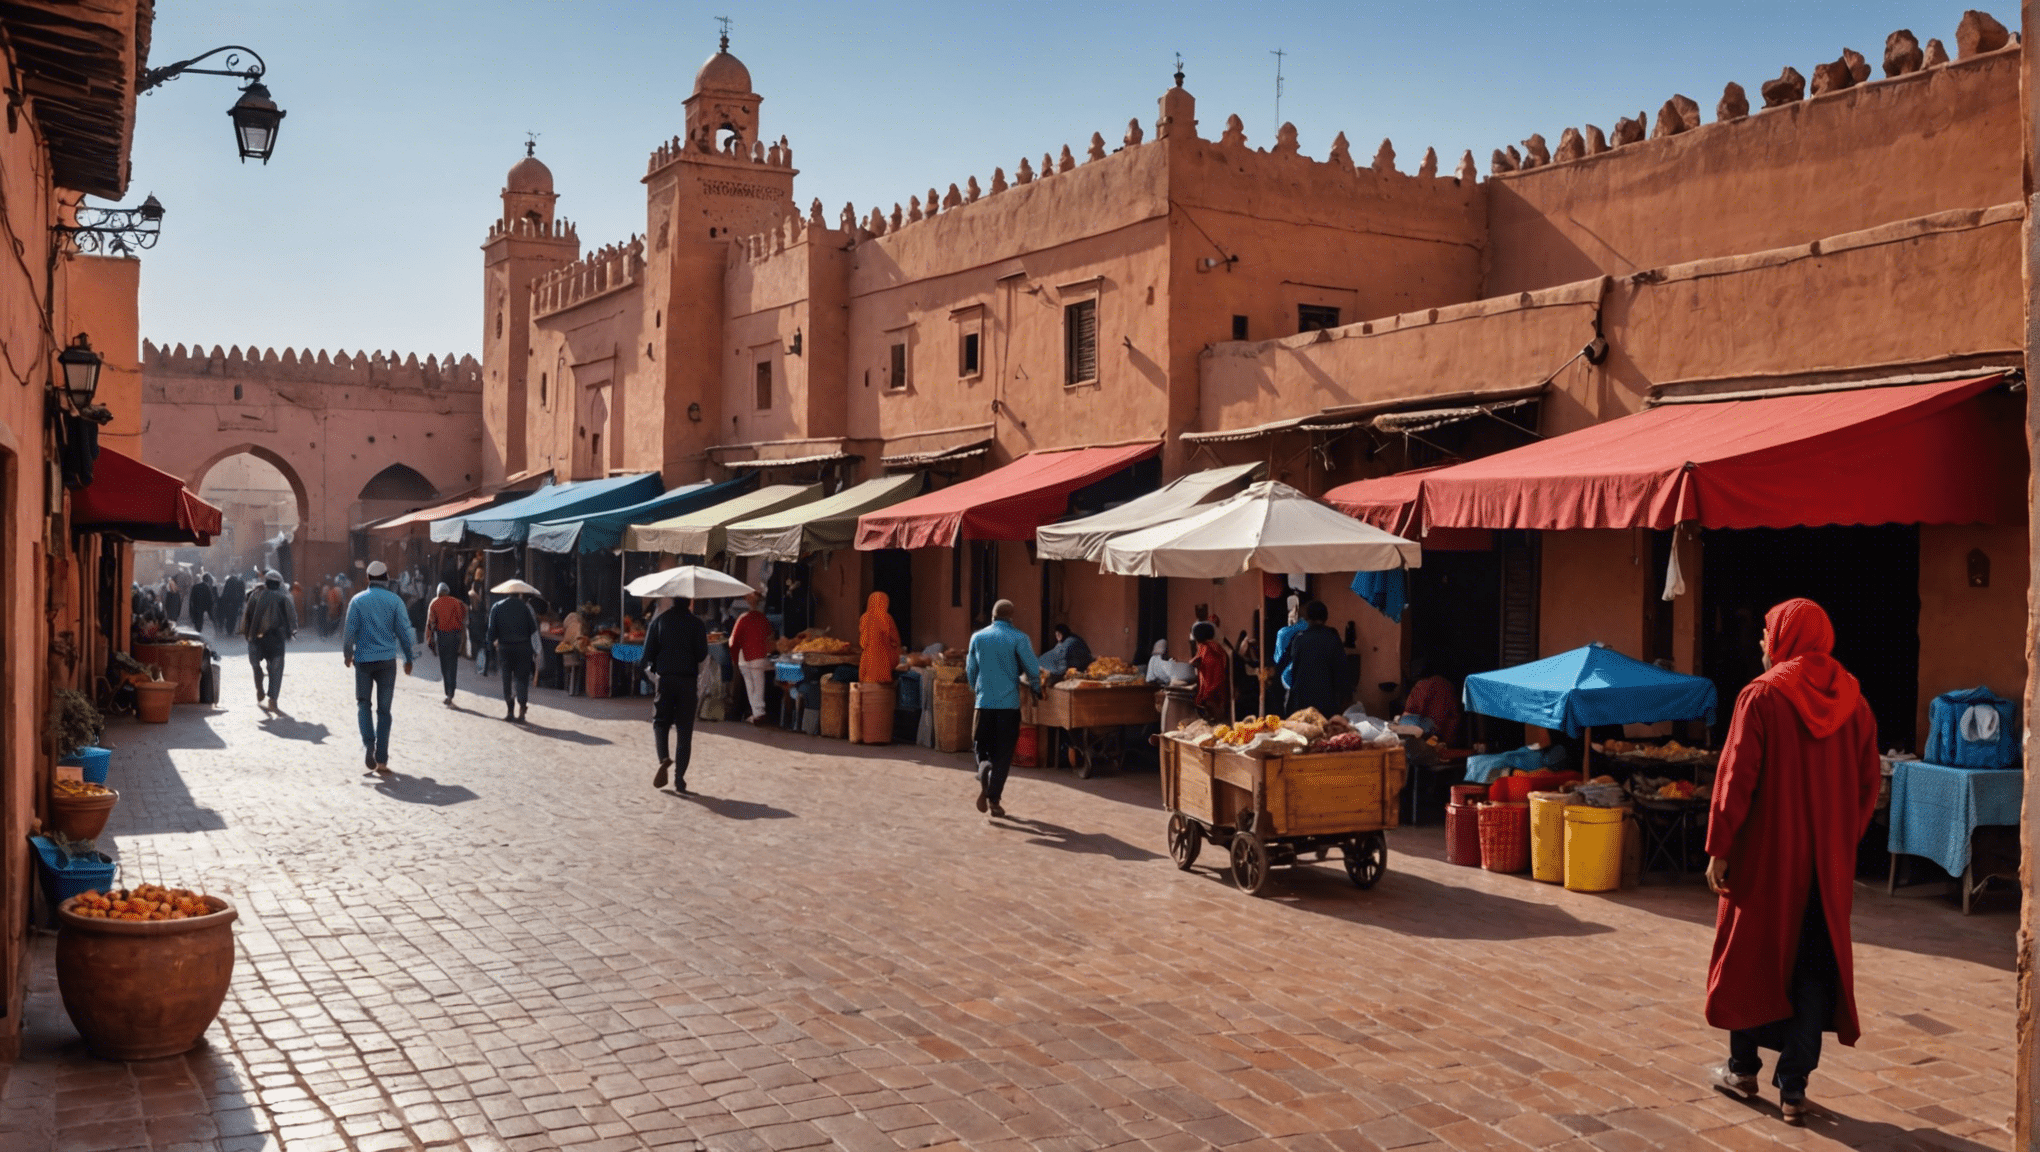 Entdecken Sie die neuesten Wettervorhersagen für Marrakesch, wenn der Ramadan zu Ende geht, und planen Sie Ihre Reise entsprechend für ein unvergessliches Erlebnis.